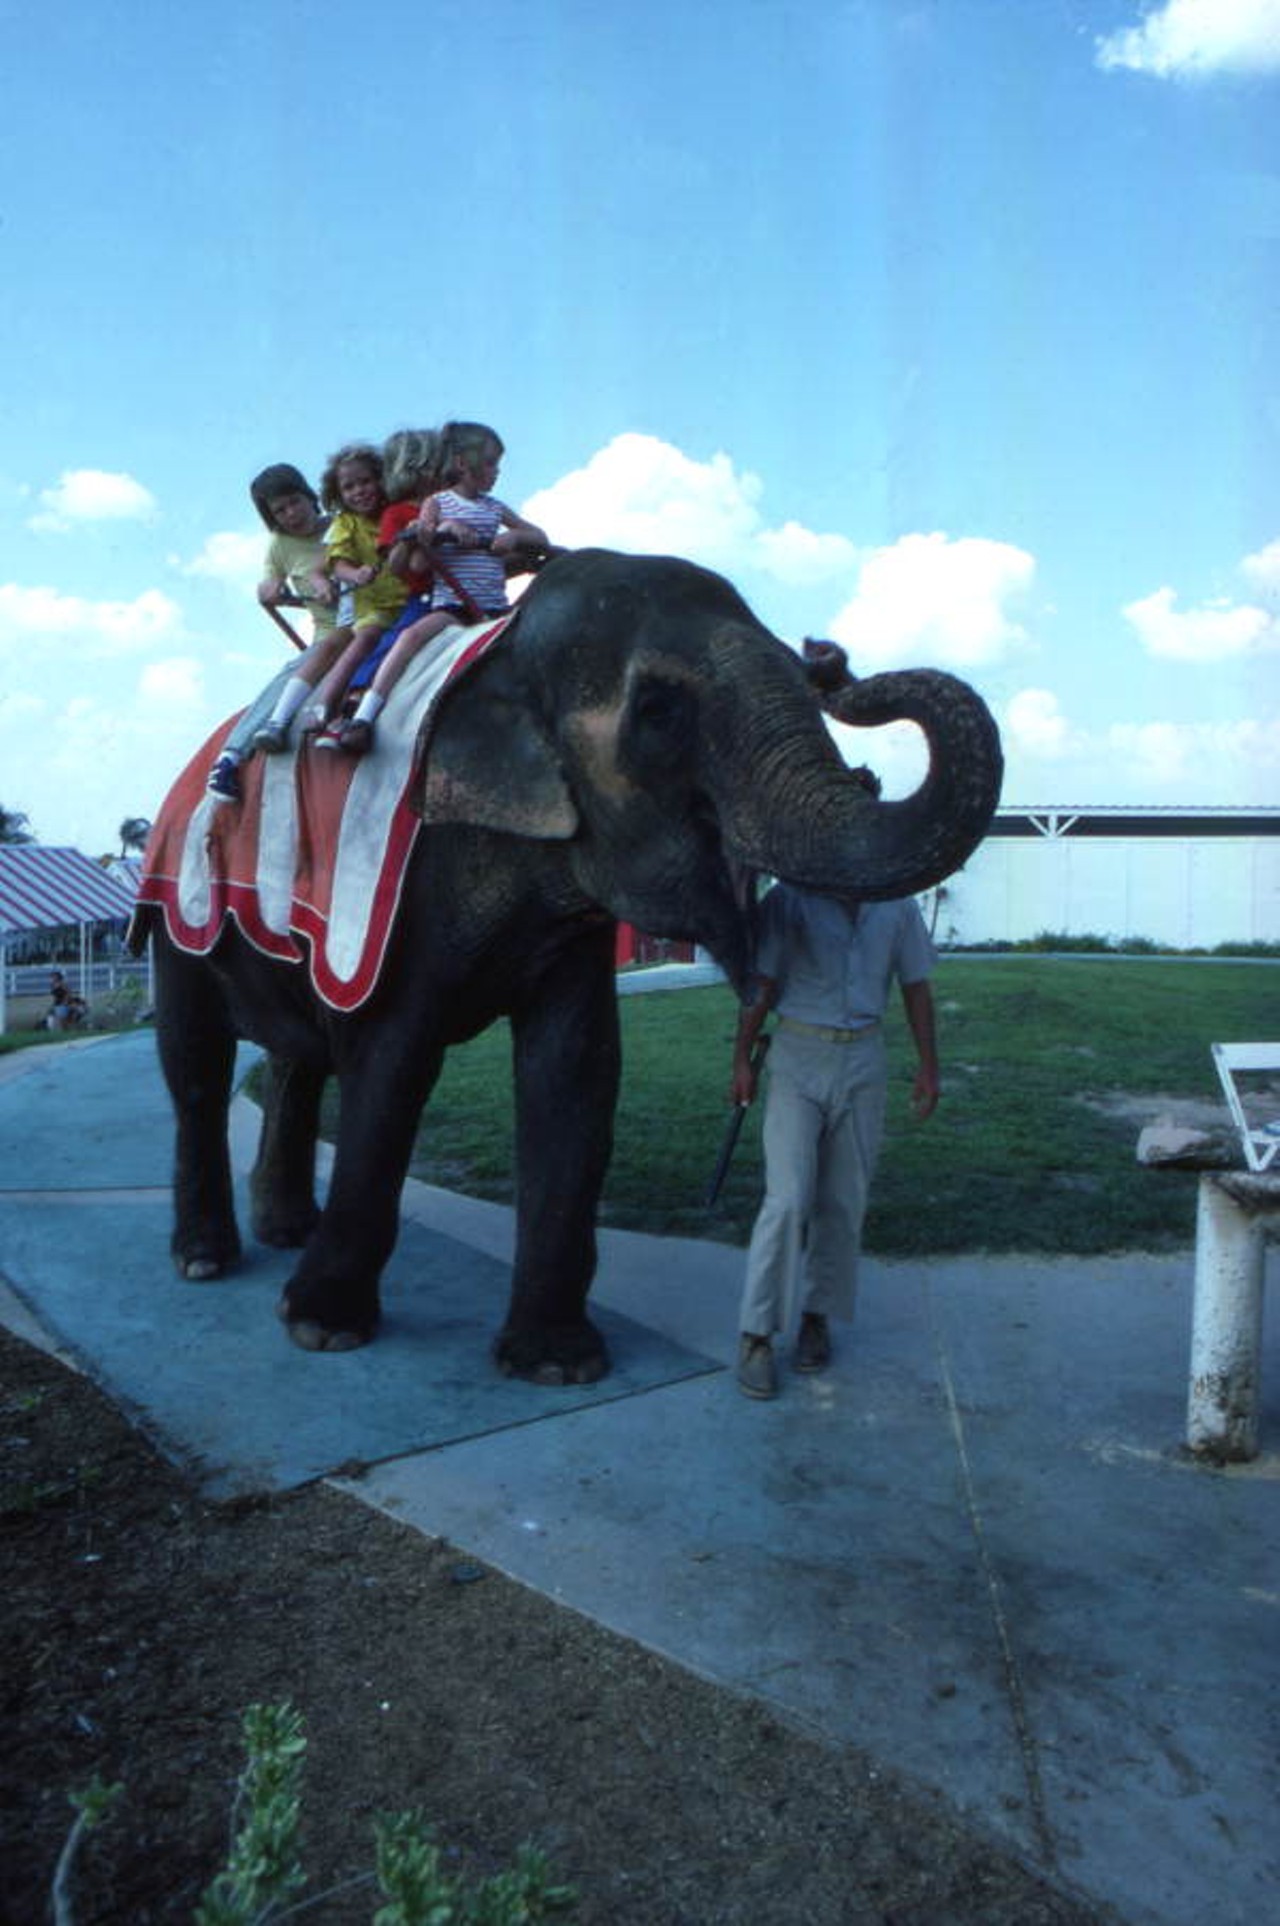 And, of course, elephant rides. (via floridamemory.com)